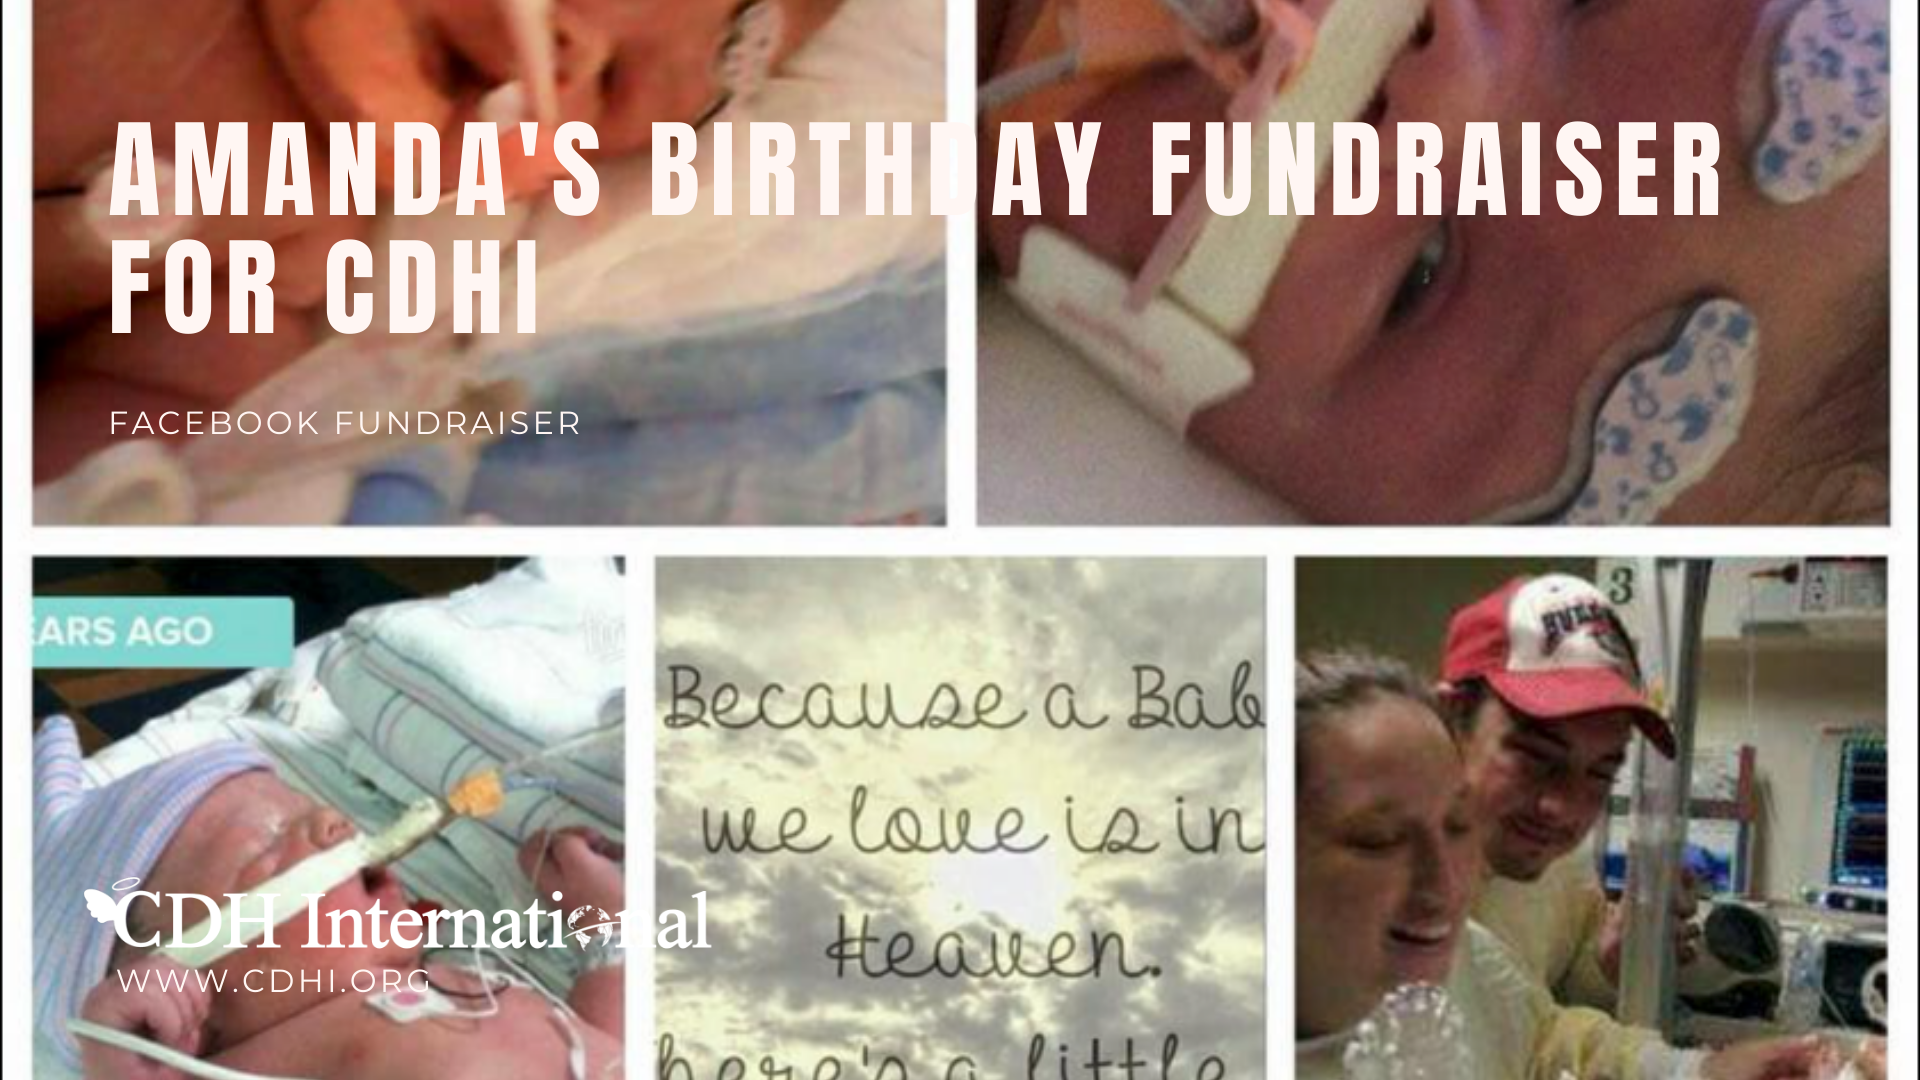 Bethany’s Birthday Fundraiser for CDHi